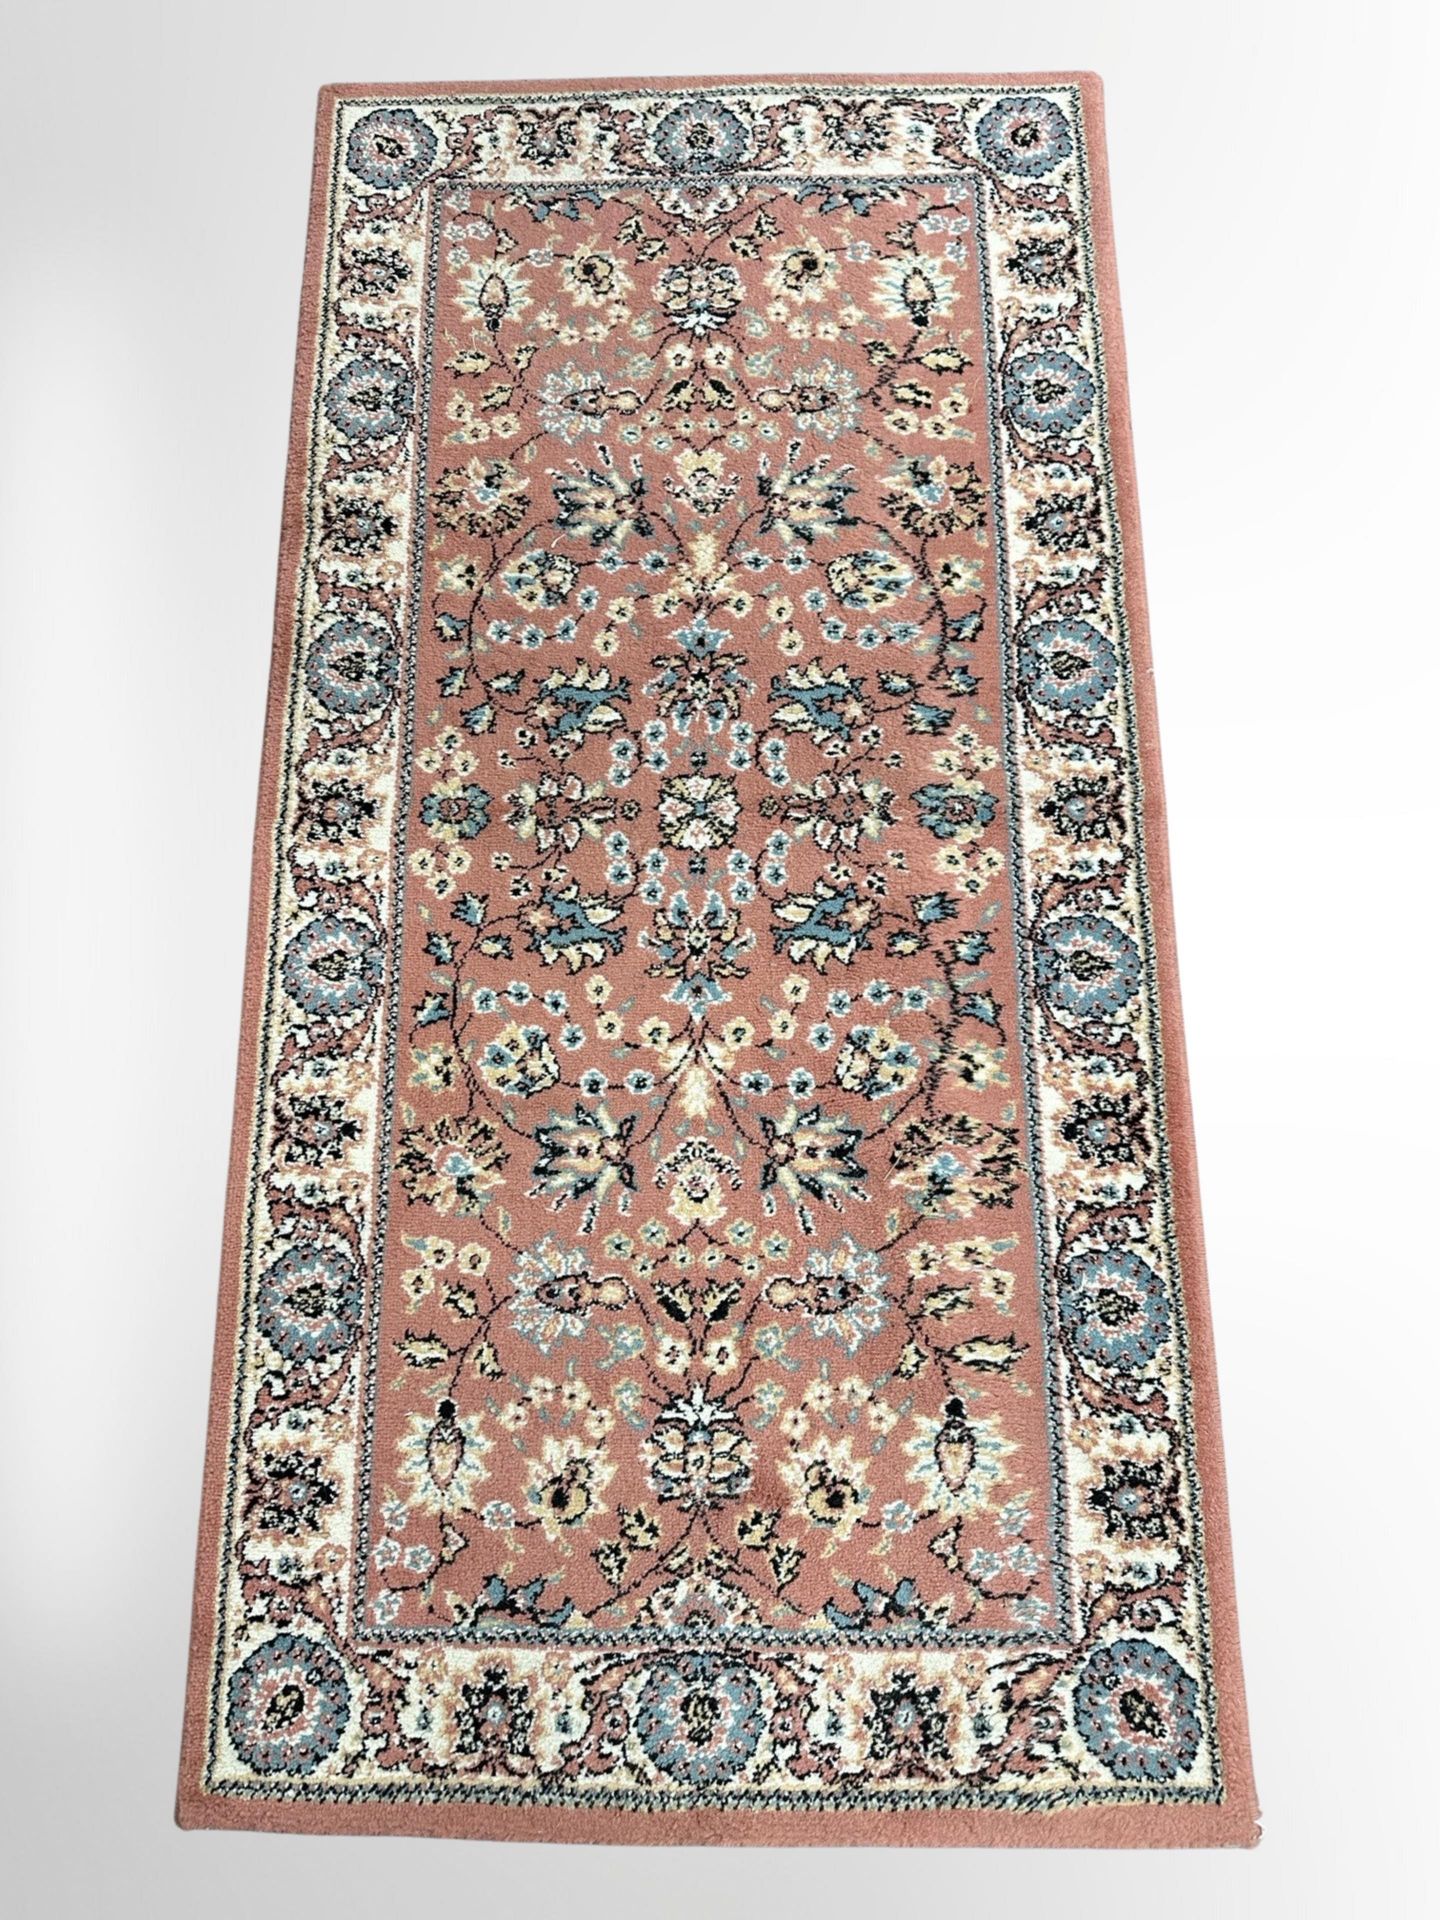 A machine-made rug of Iranian Saroukh design,